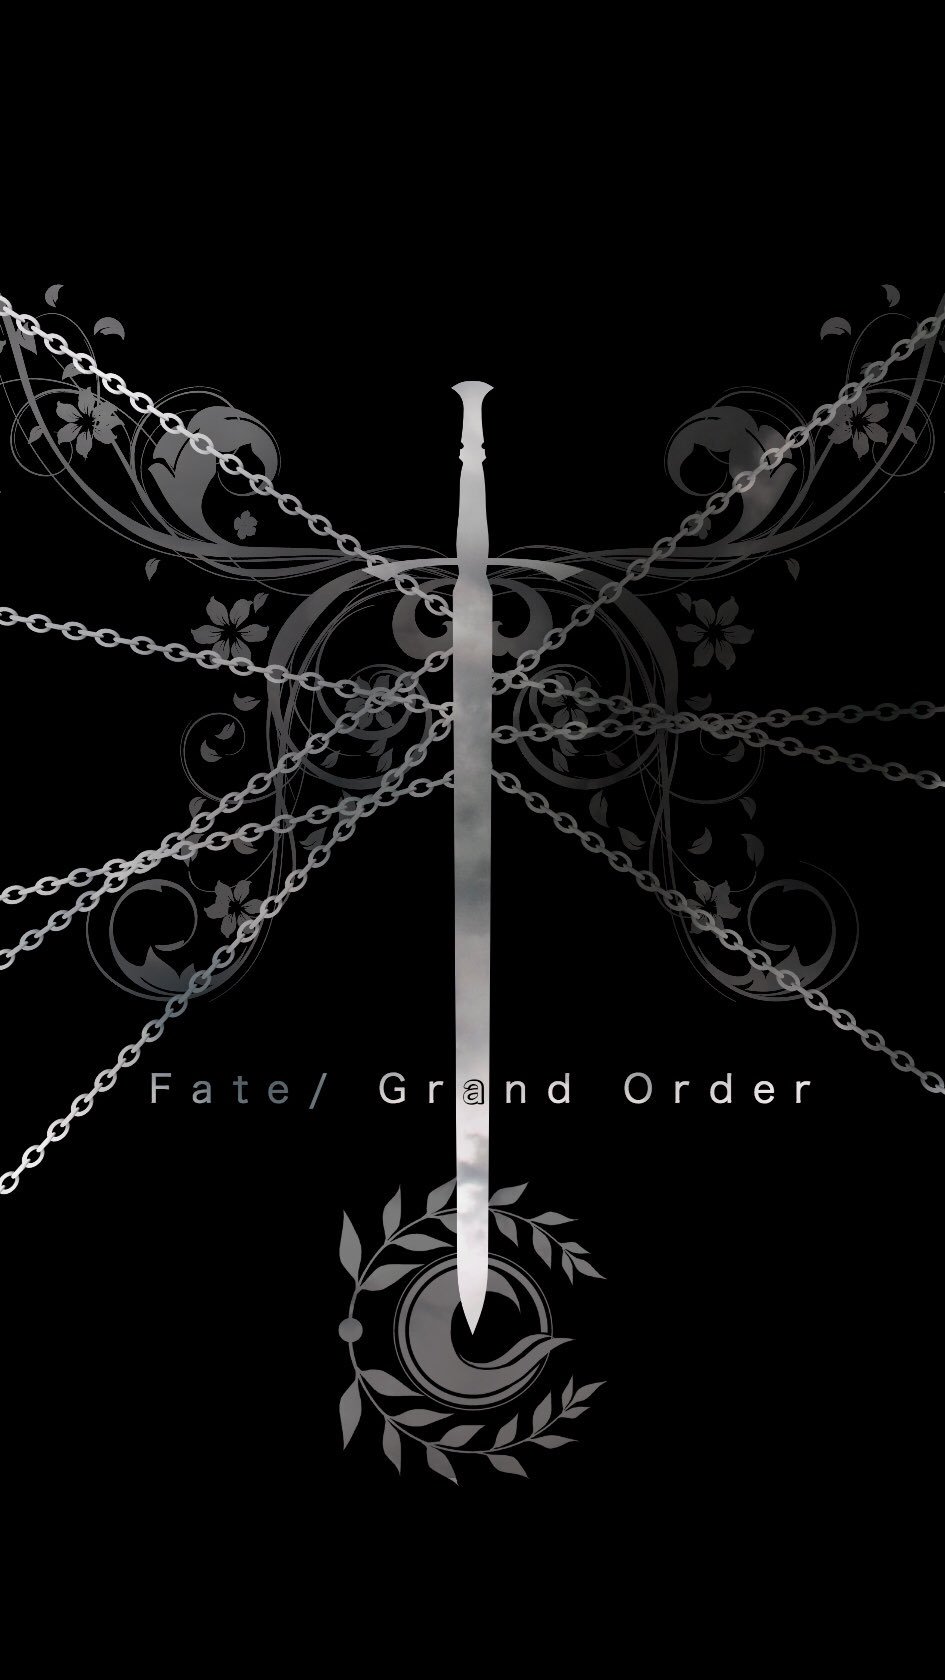 تويتر 輝桜 على تويتر 燁桜の壁紙宝庫 第235弾 Fate Fate Grand Orderの壁紙です 剣と鎖のイメージです Fate Fgo Fatego Fate壁紙宝庫 T Co Tnpqde5gkr